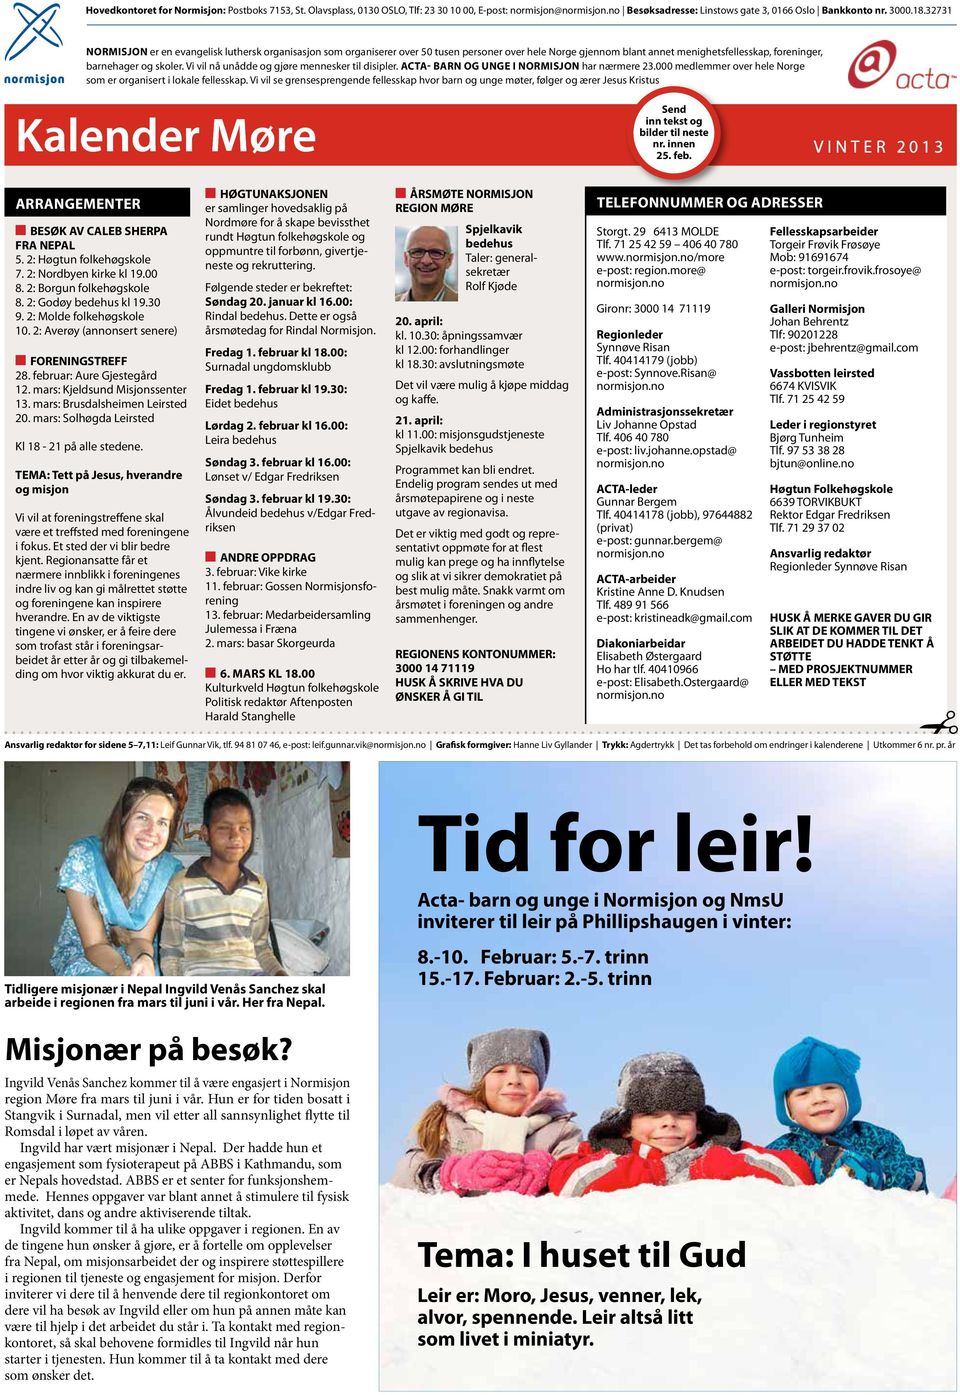 Vi vil nå unådde og gjøre mennesker til disipler. Acta- barn og unge i Normisjon har nærmere 23.000 medlemmer over hele Norge som er organisert i lokale fellesskap.